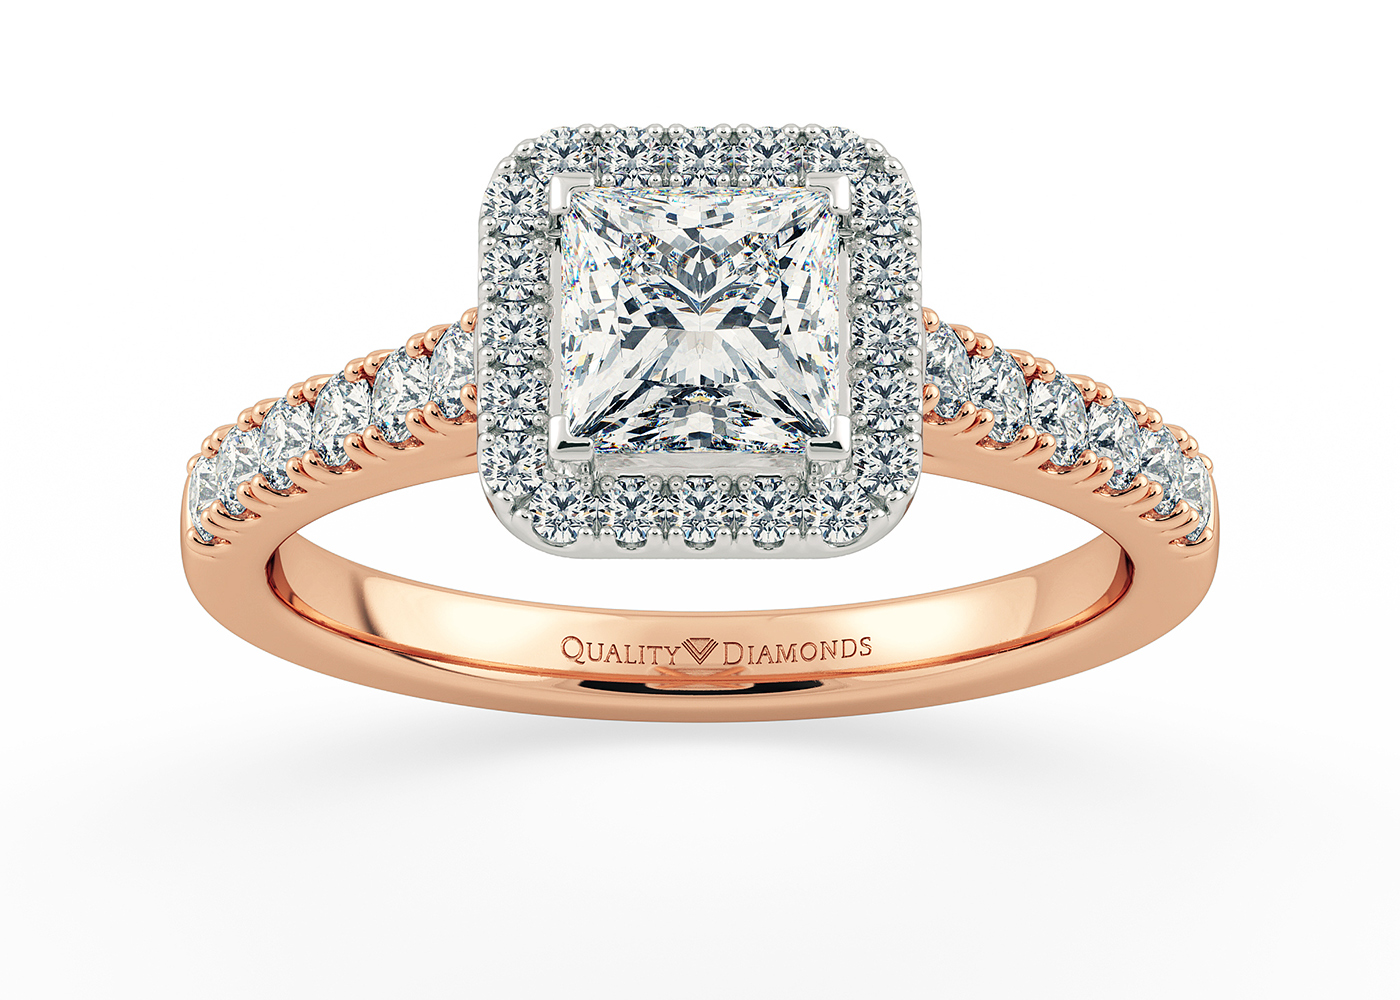 Two Carat Halo Princess Diamond Ring in 18K Rose Gold